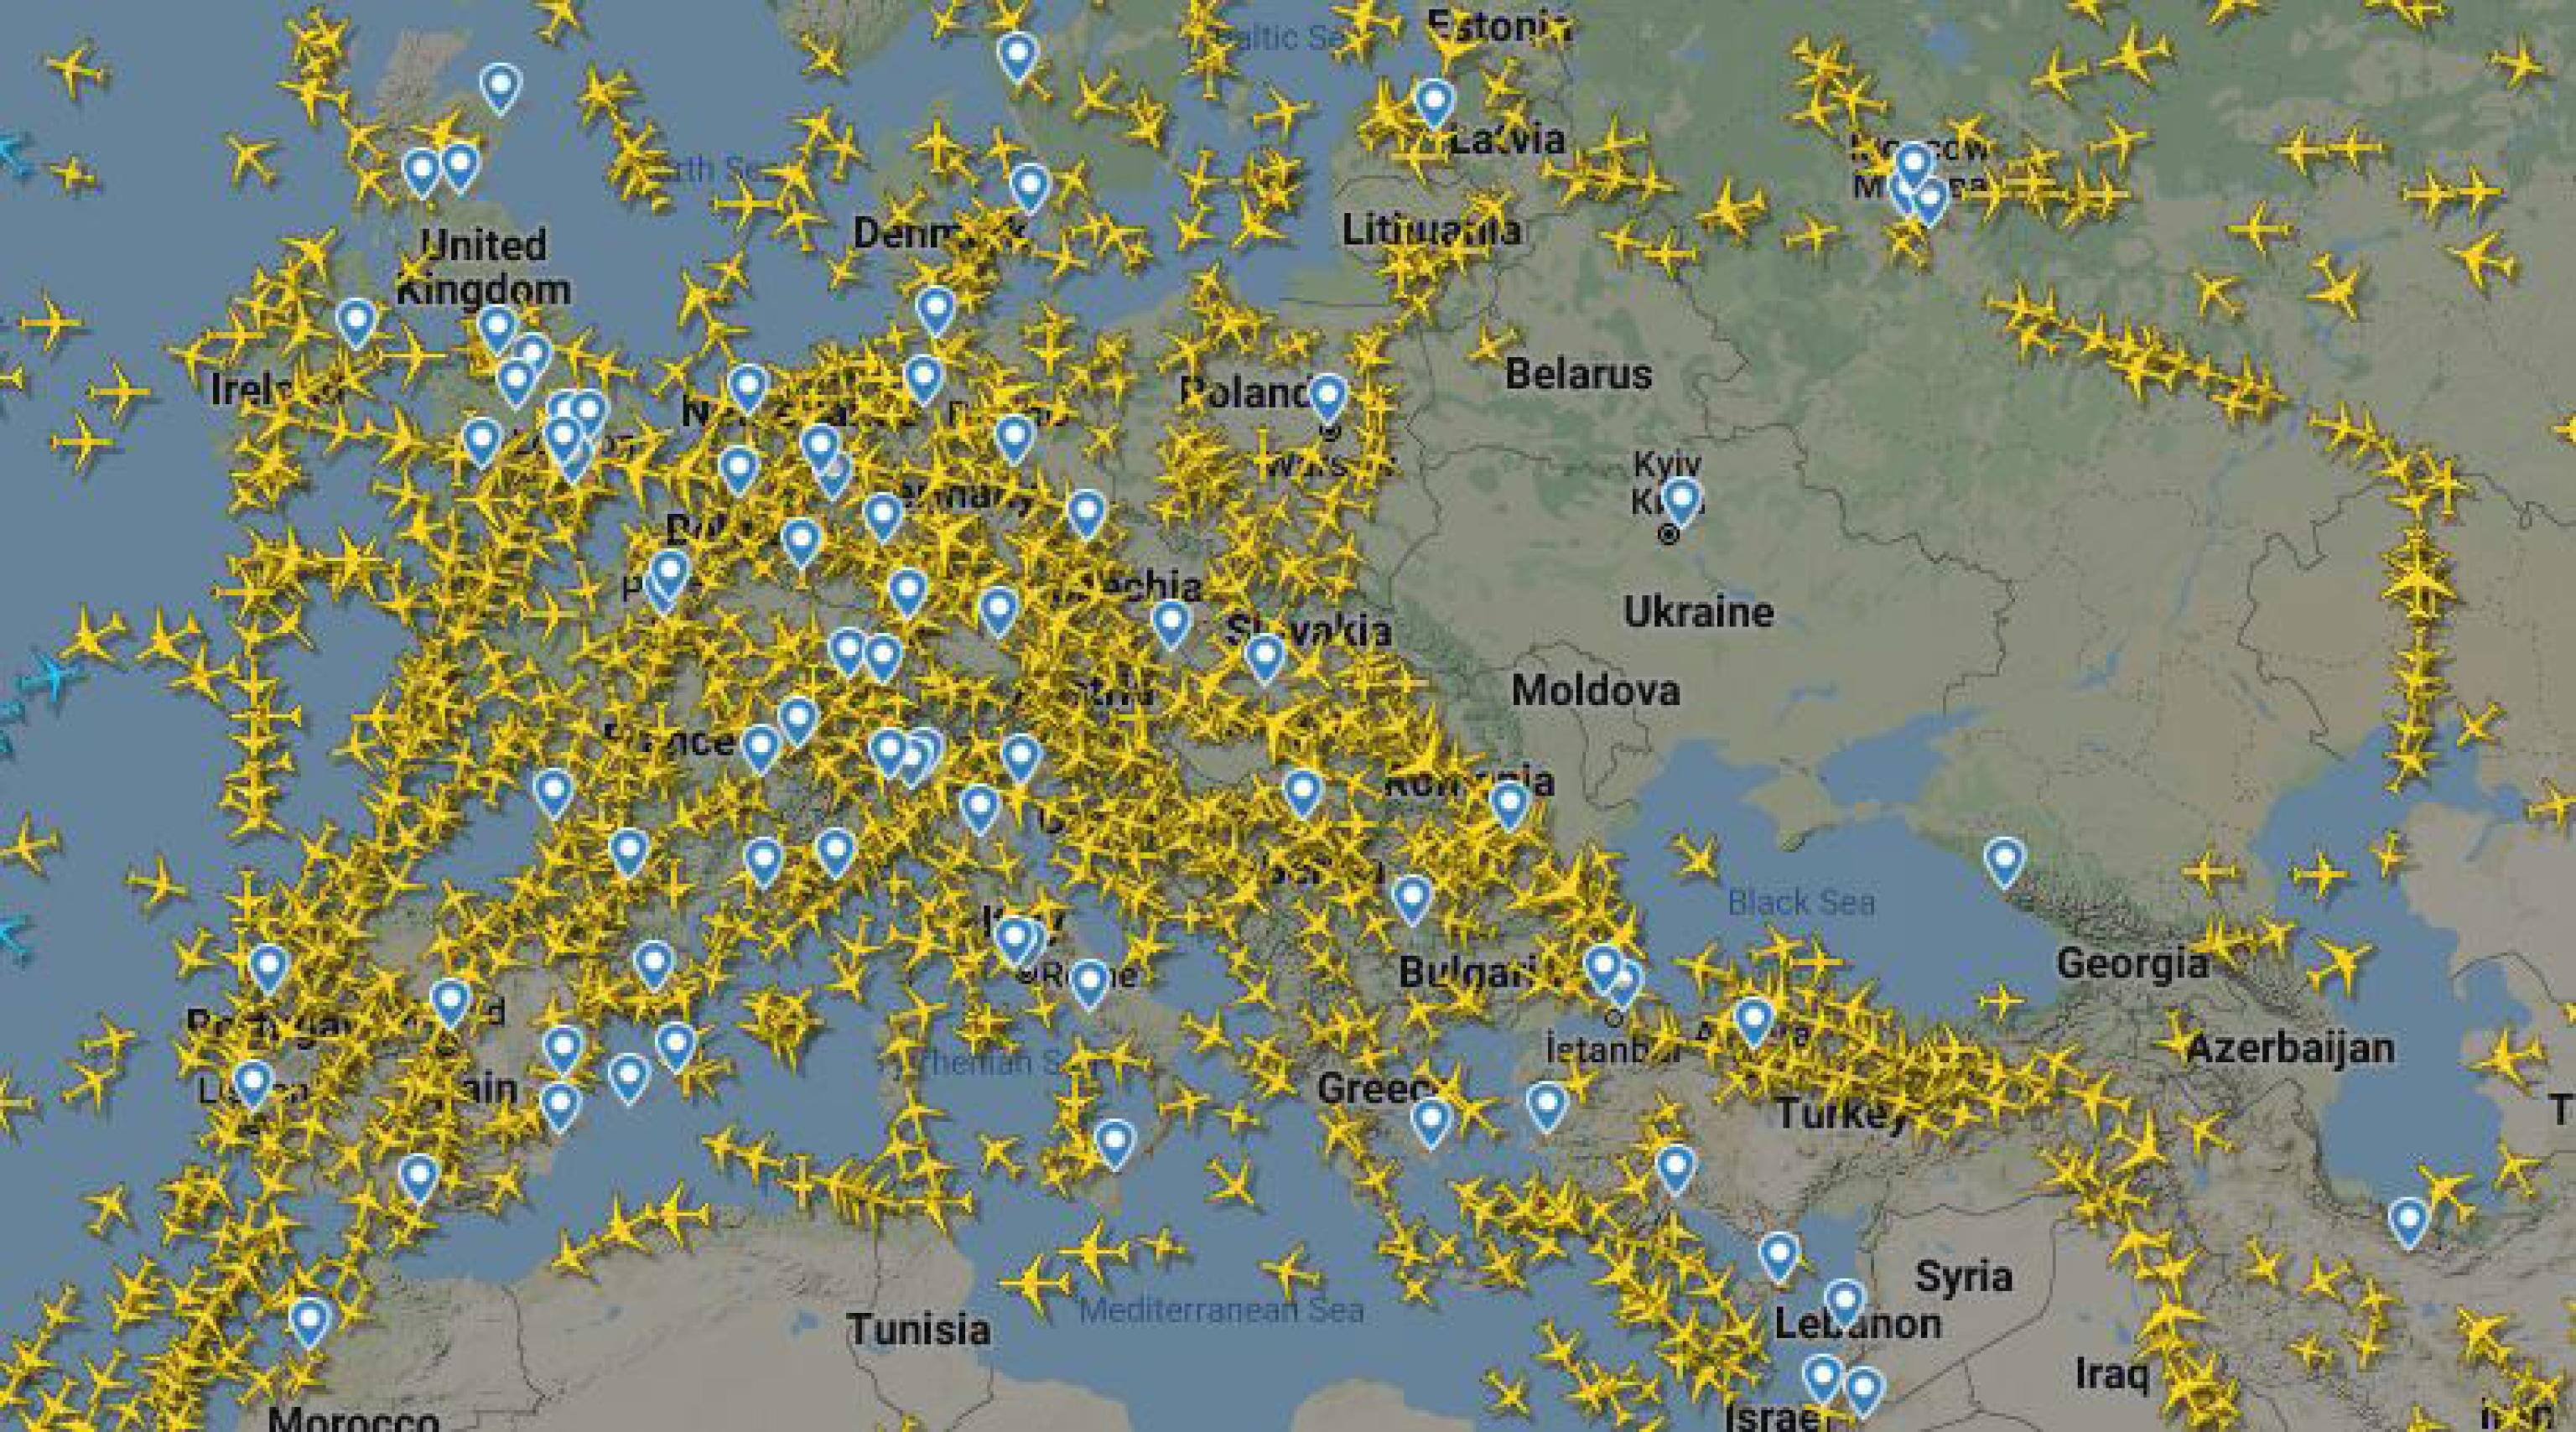 Una schermata tratta dal sito FlightRadar24 del traffico aereo sui cieli dell'Ucraina come appare in questo momento.
ANSA/FlightRadar24 EDITORIAL USE ONLY NO SALES